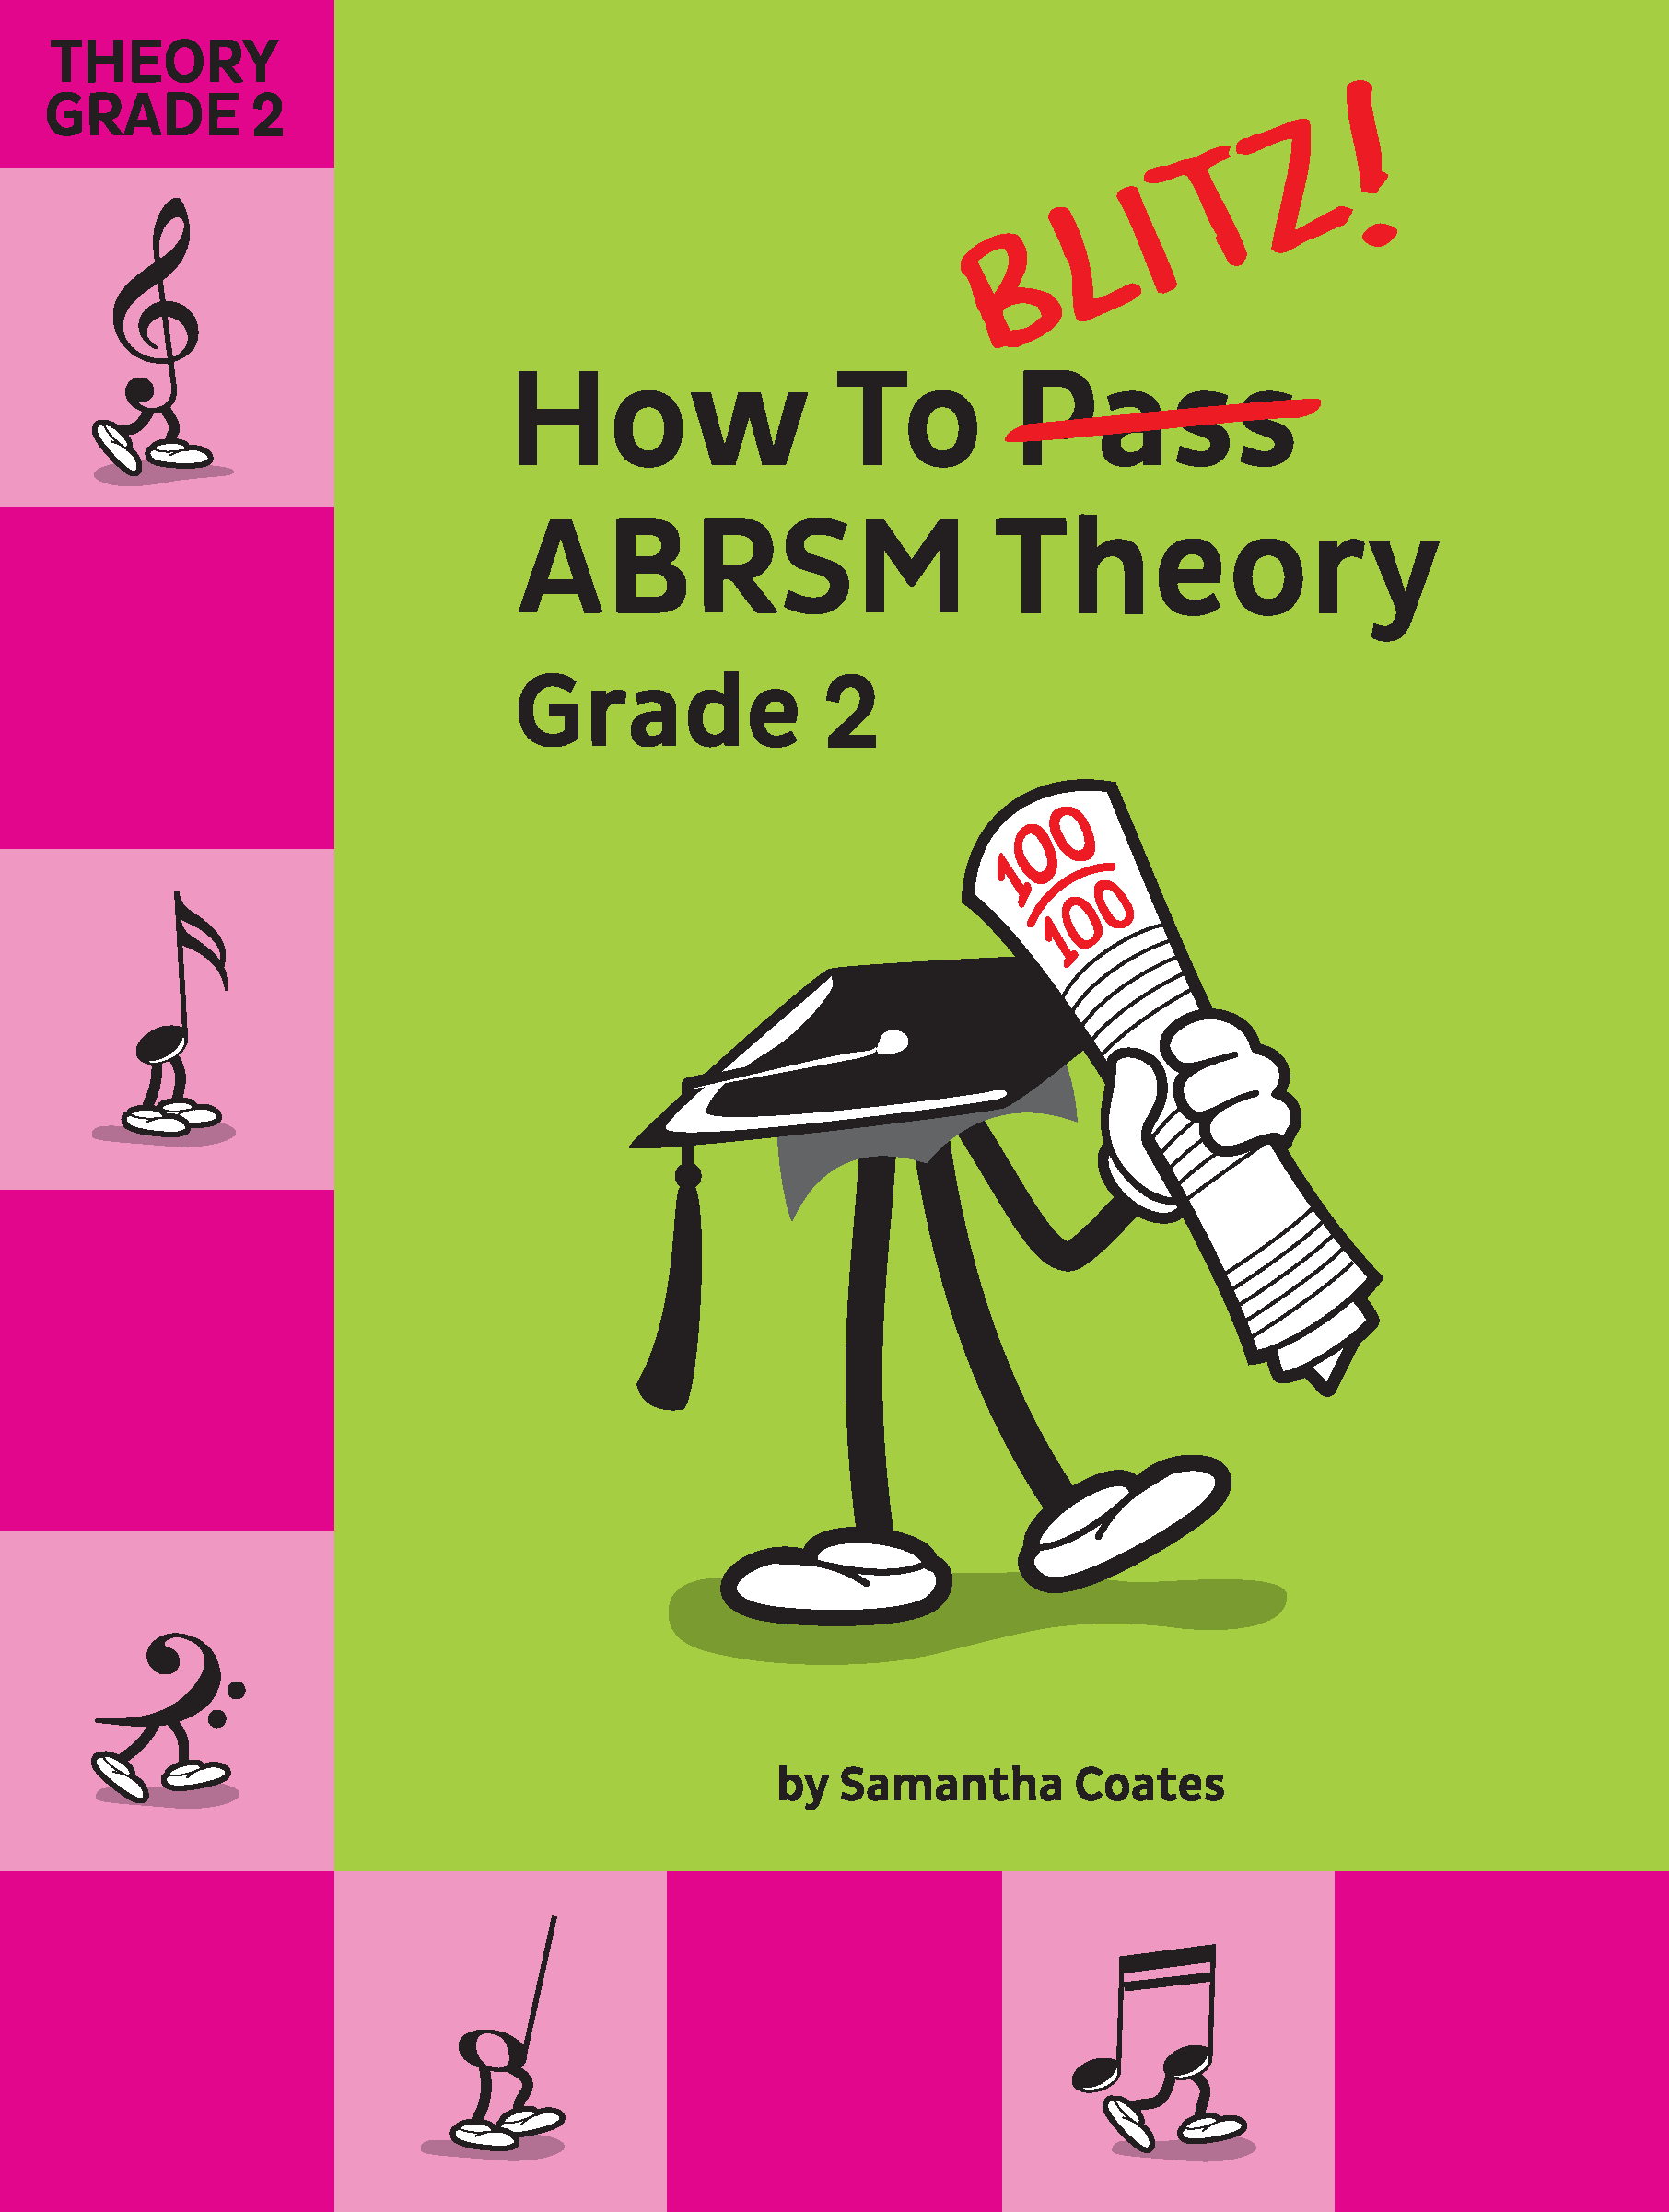 Grade 2 ABRSM Theory